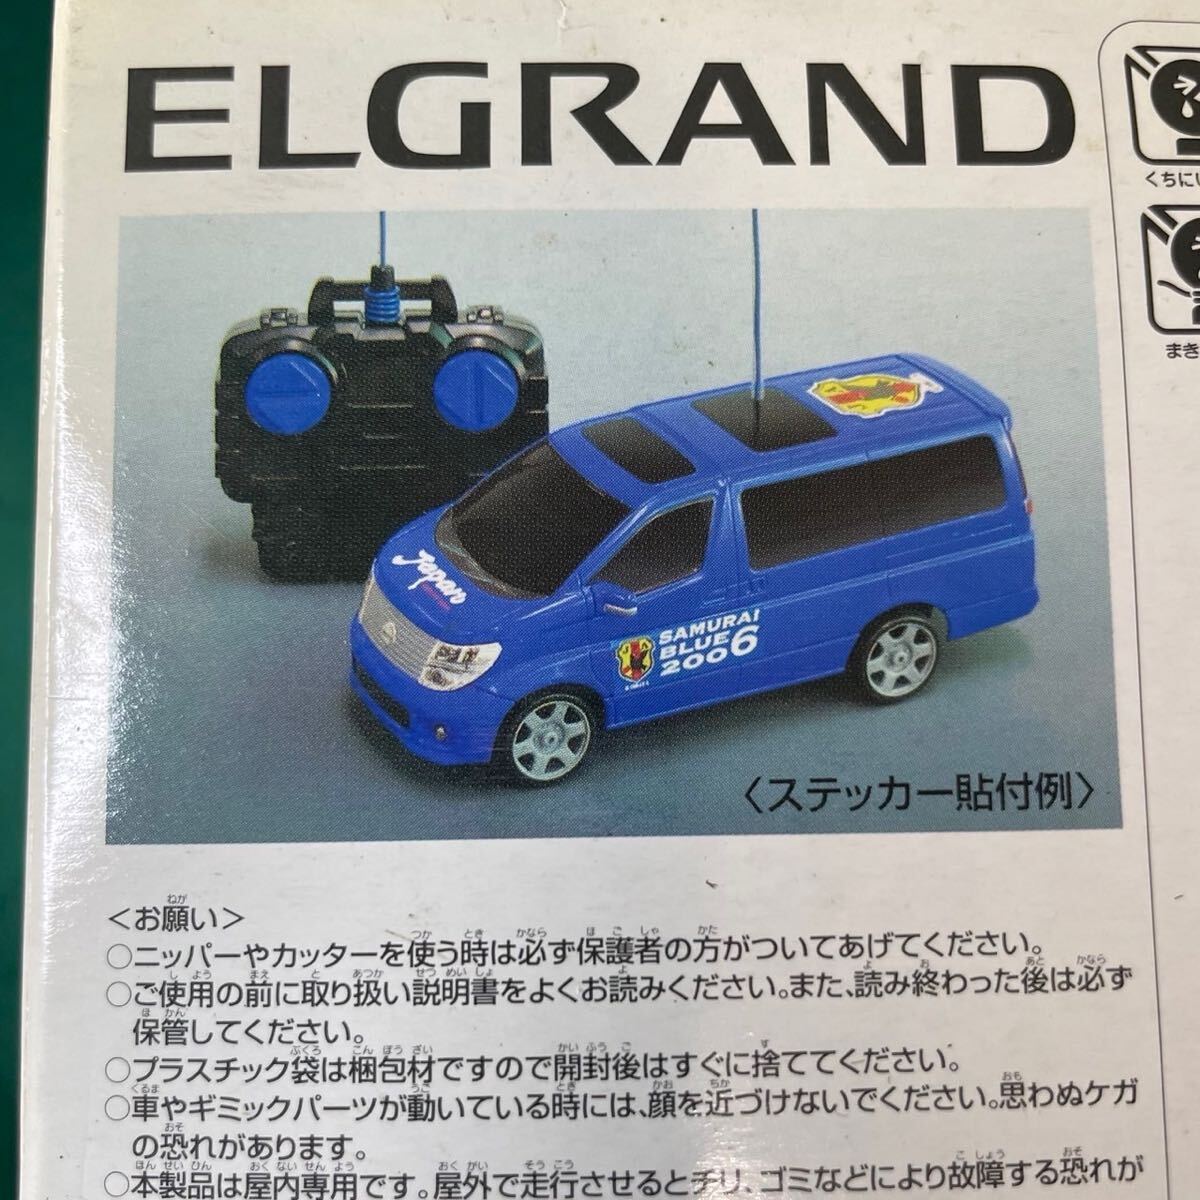  редкий NISSAN Elgrand футбол Япония представитель specification Nissan оригинал радиоконтроллер стикер входить Samurai голубой 2006 Ниссан 